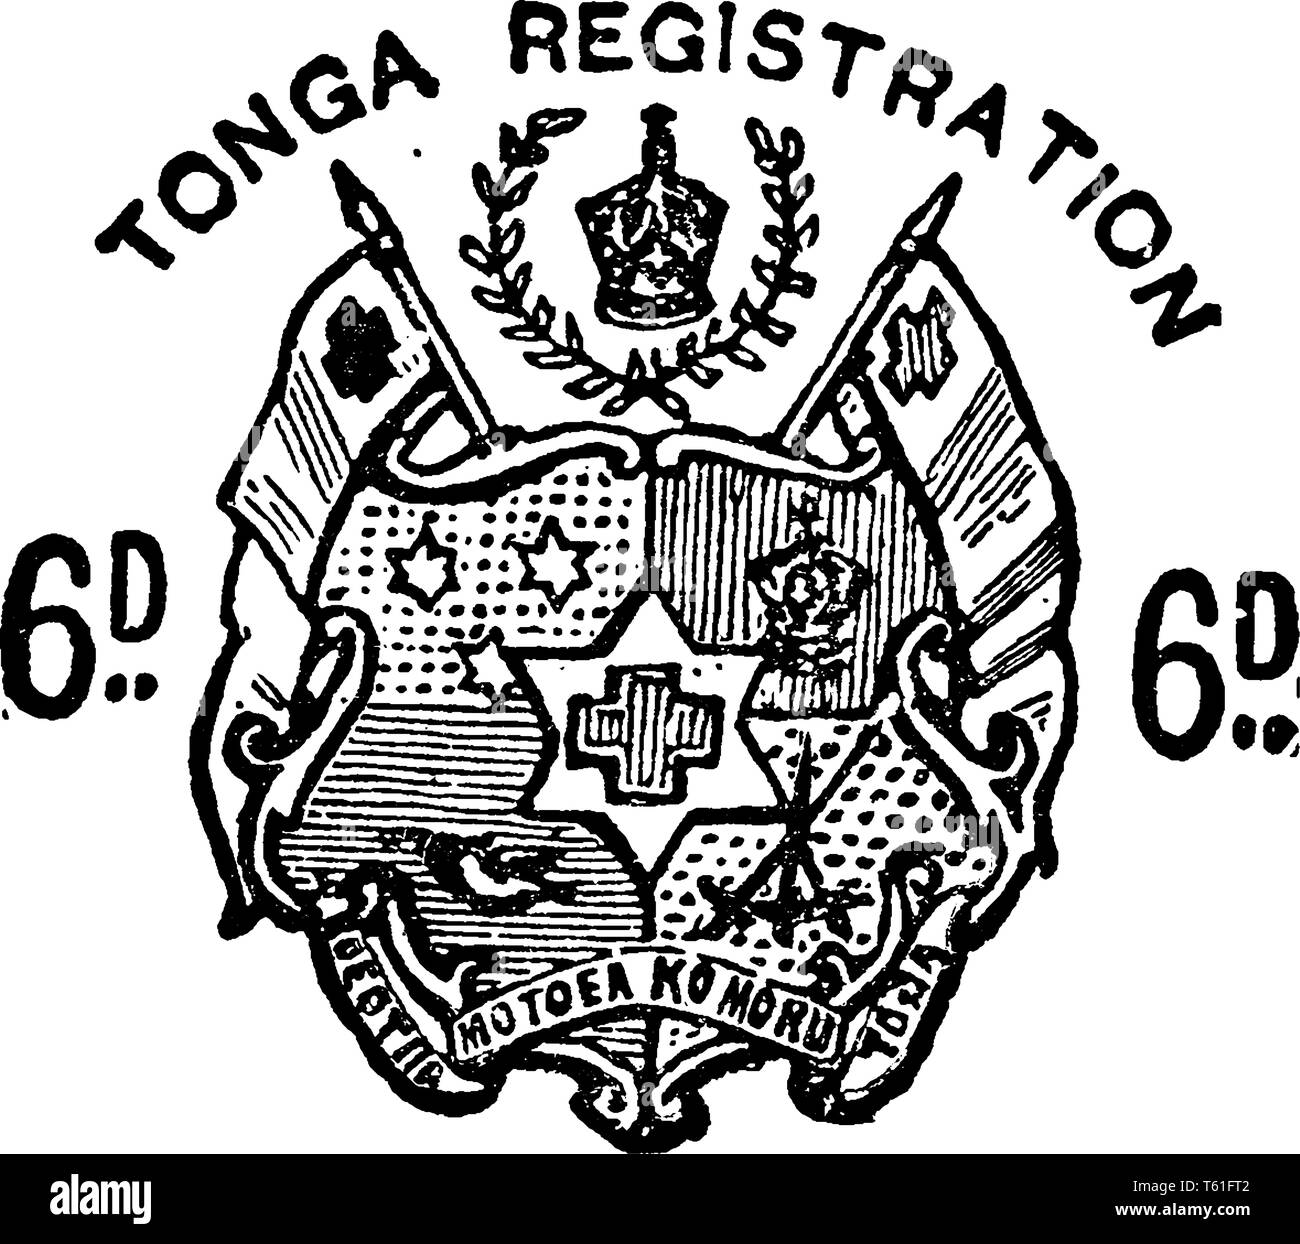 Dieses Bild stellt Tonga 6D Registrierung Umschlag in 1892, vintage Strichzeichnung oder Gravur Abbildung. Stock Vektor